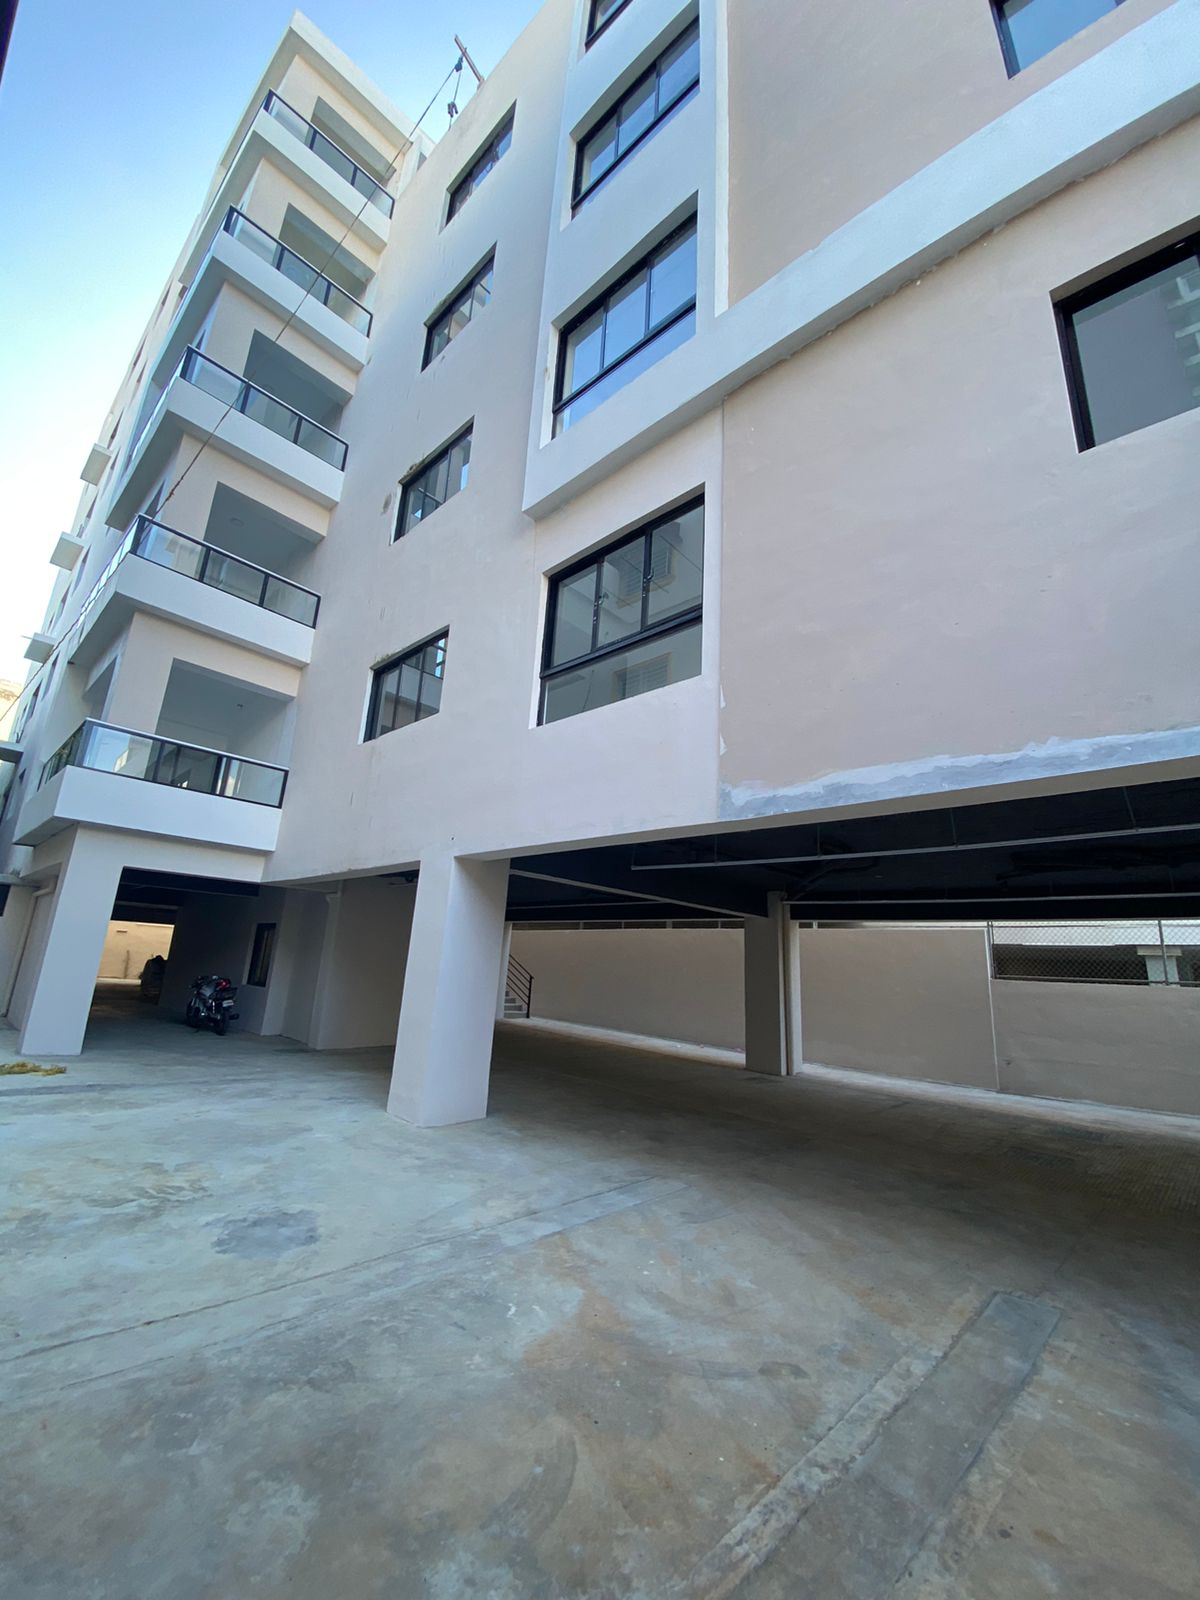 Apartamentos NUEVOS sector Ensanche Ozama listos para entrega.  Exclus Foto 7202581-2.jpg